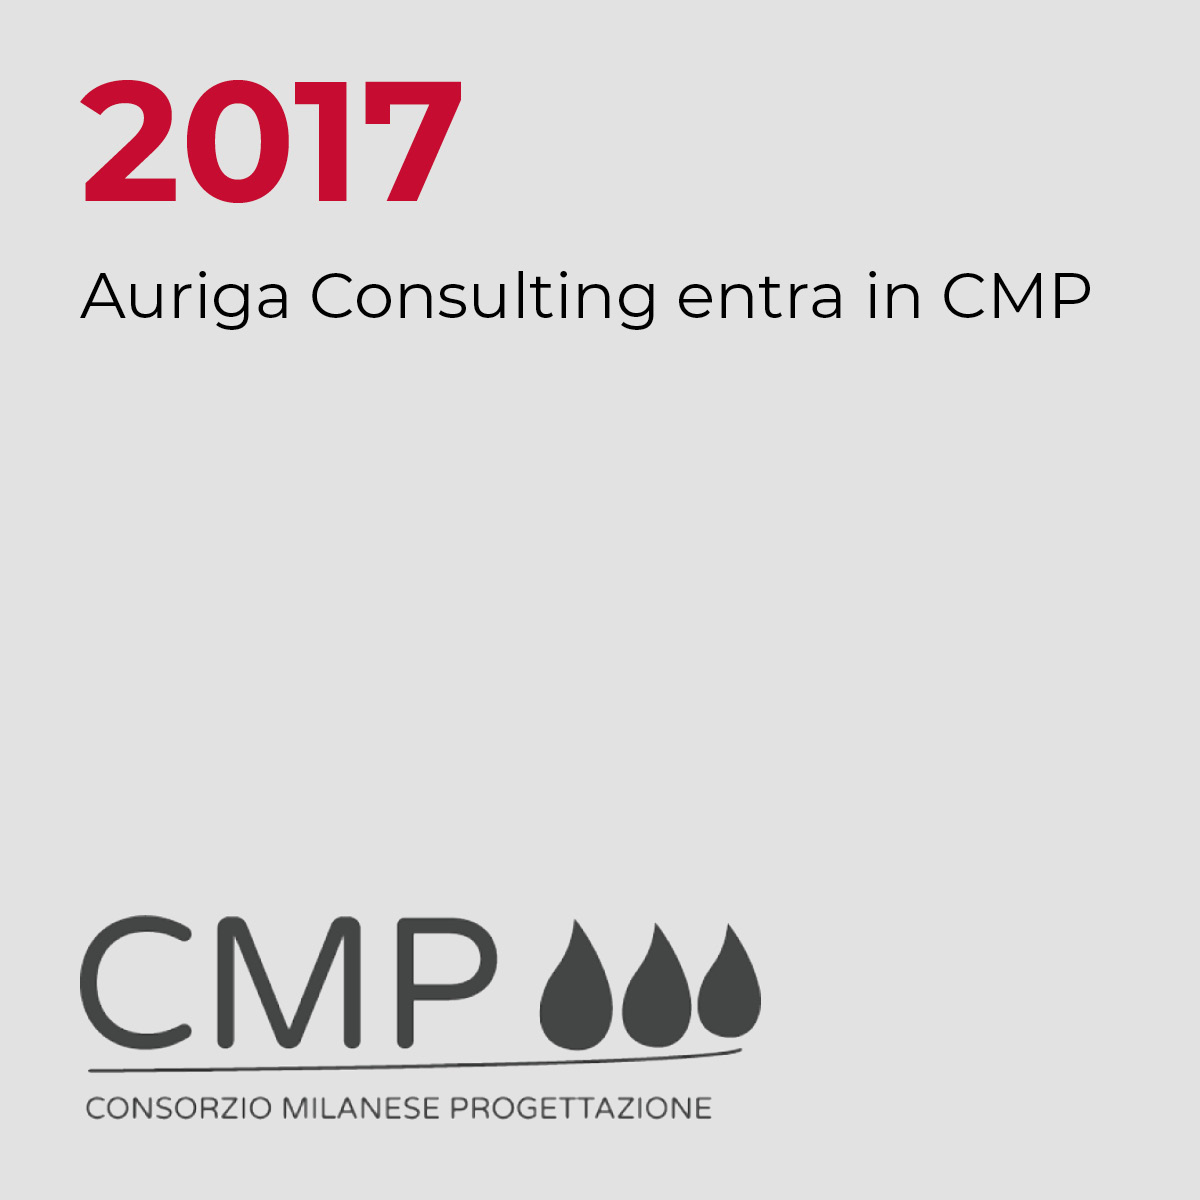 2017, Auriga Consulting entra in CMP